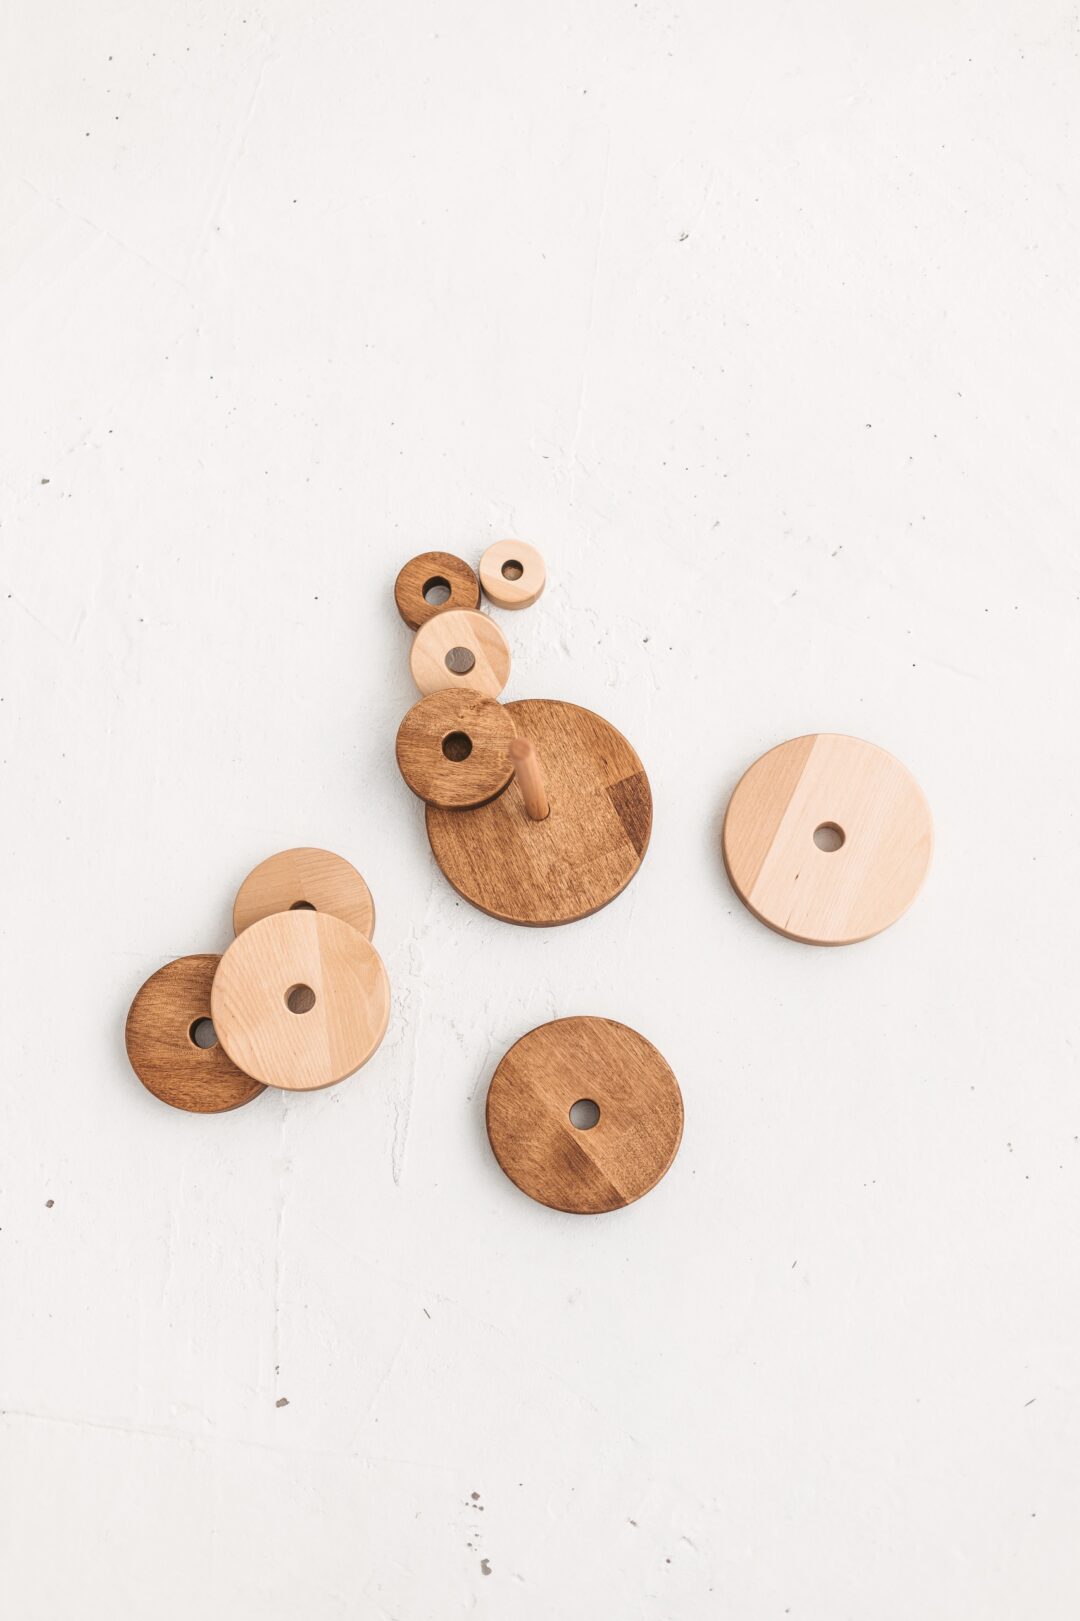 L’empileur d’anneaux en bois Montessori traditionnel est le meilleur jouet écologique, naturel et sûr pour le développement précoce du bébé.